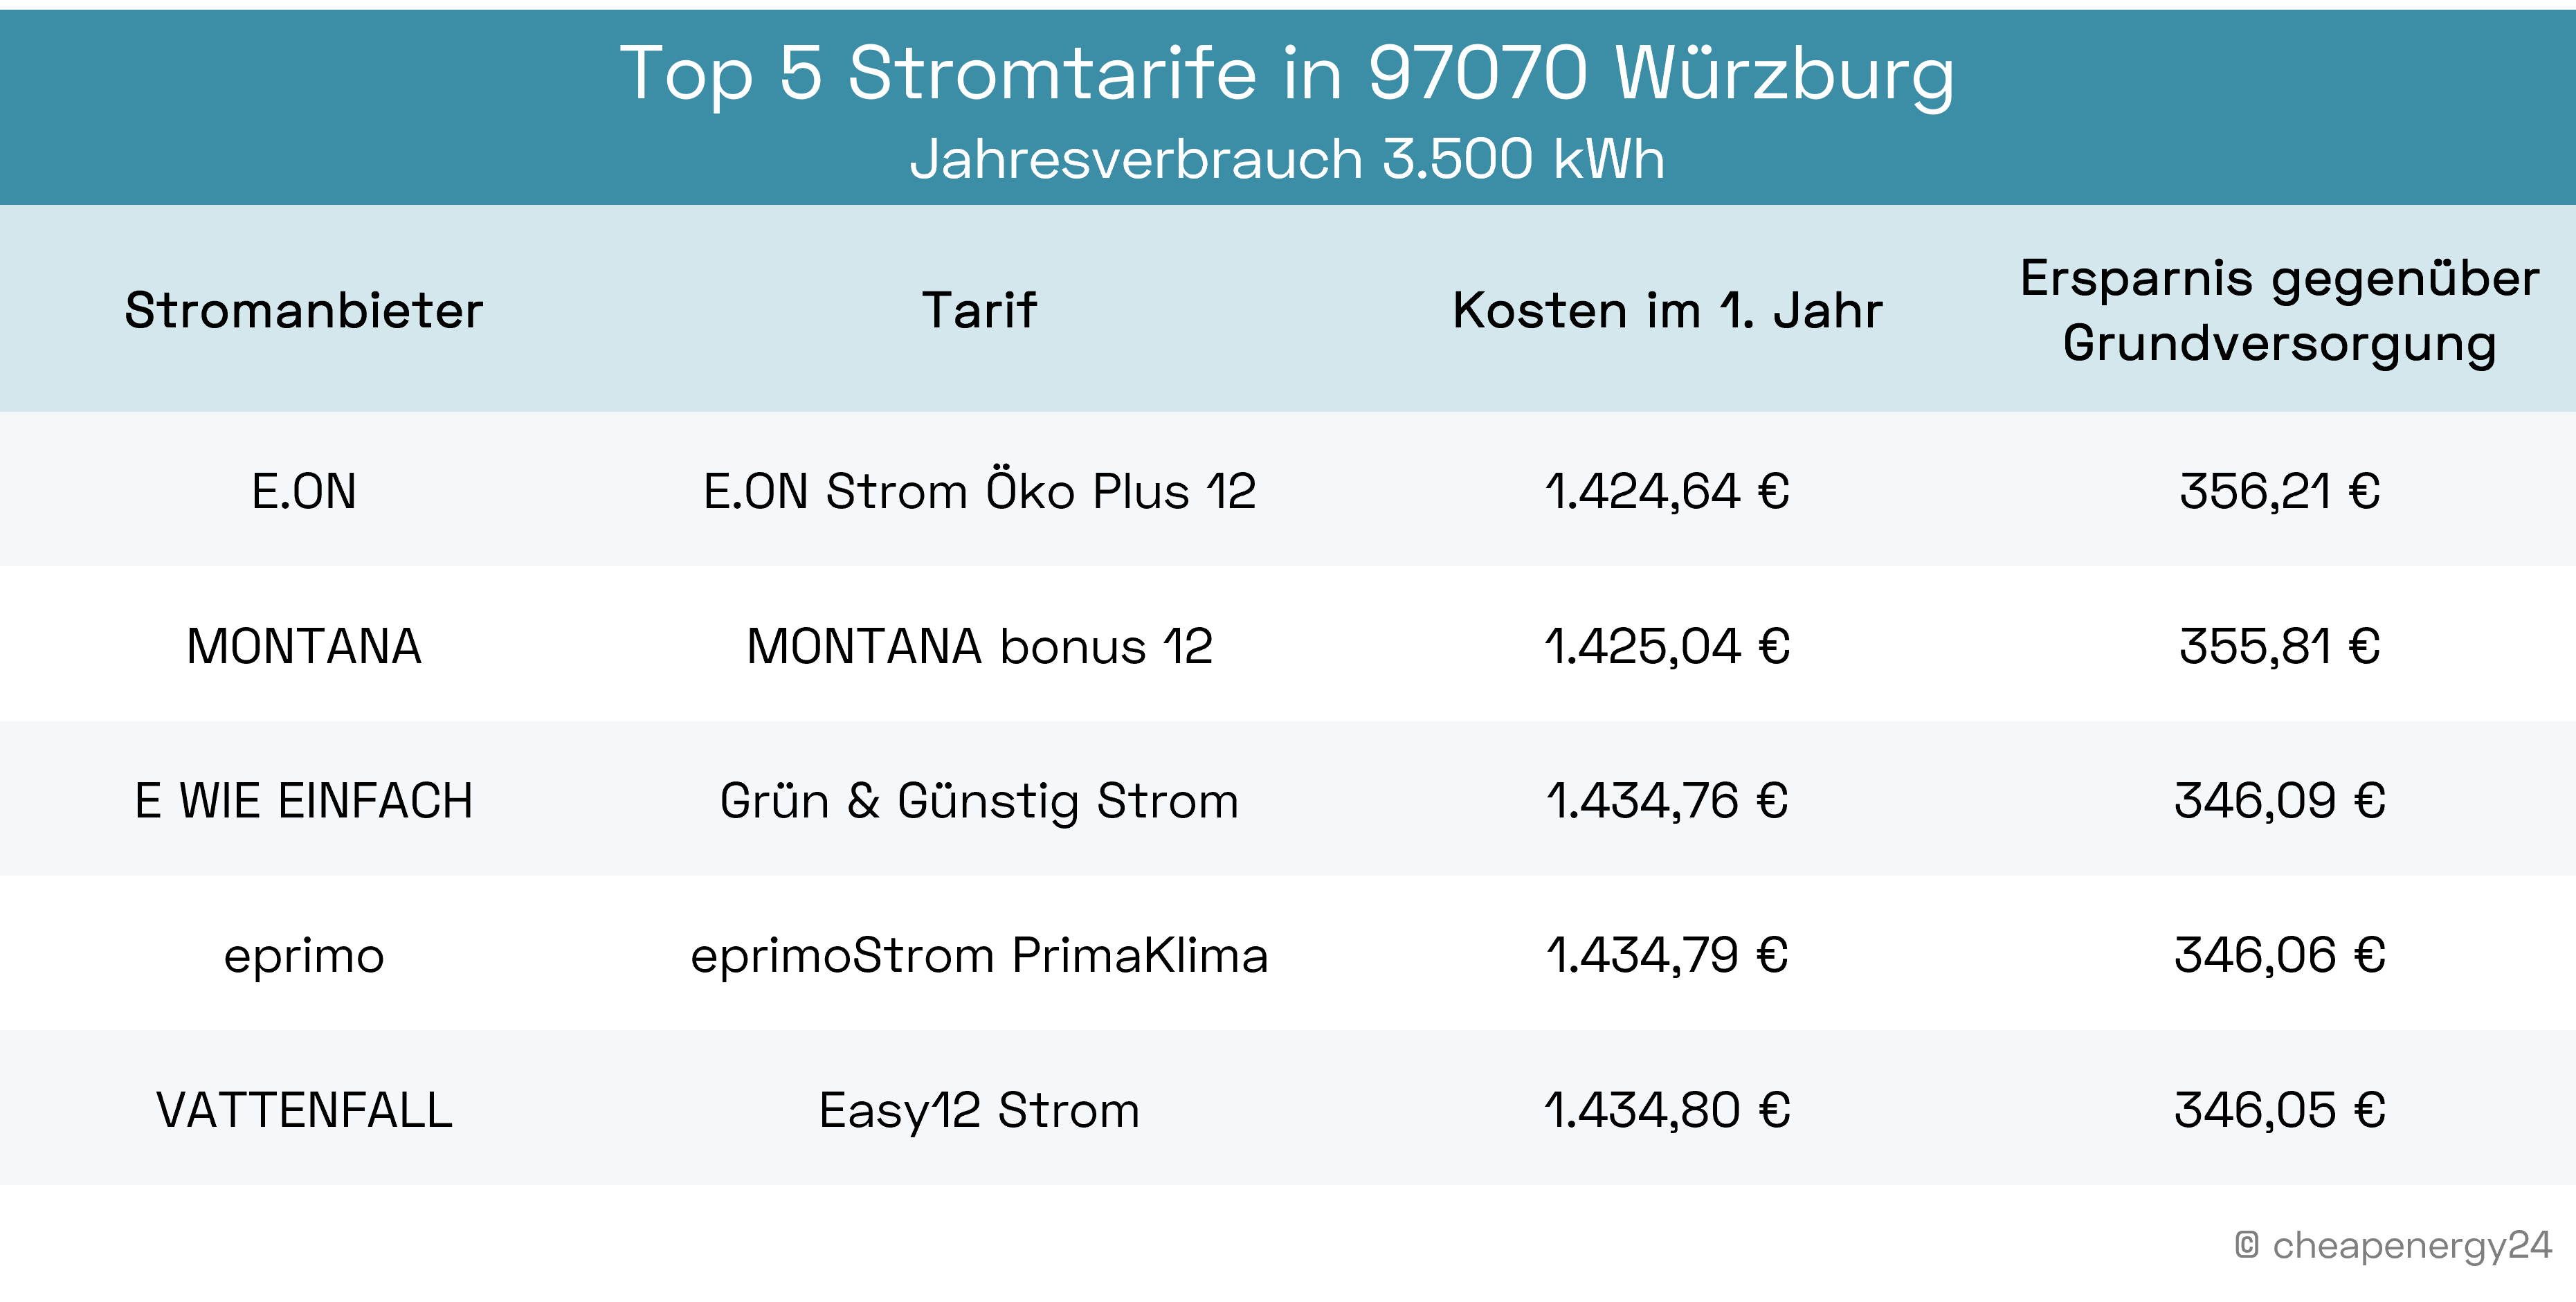 Beste Stromtarife in Würzburg